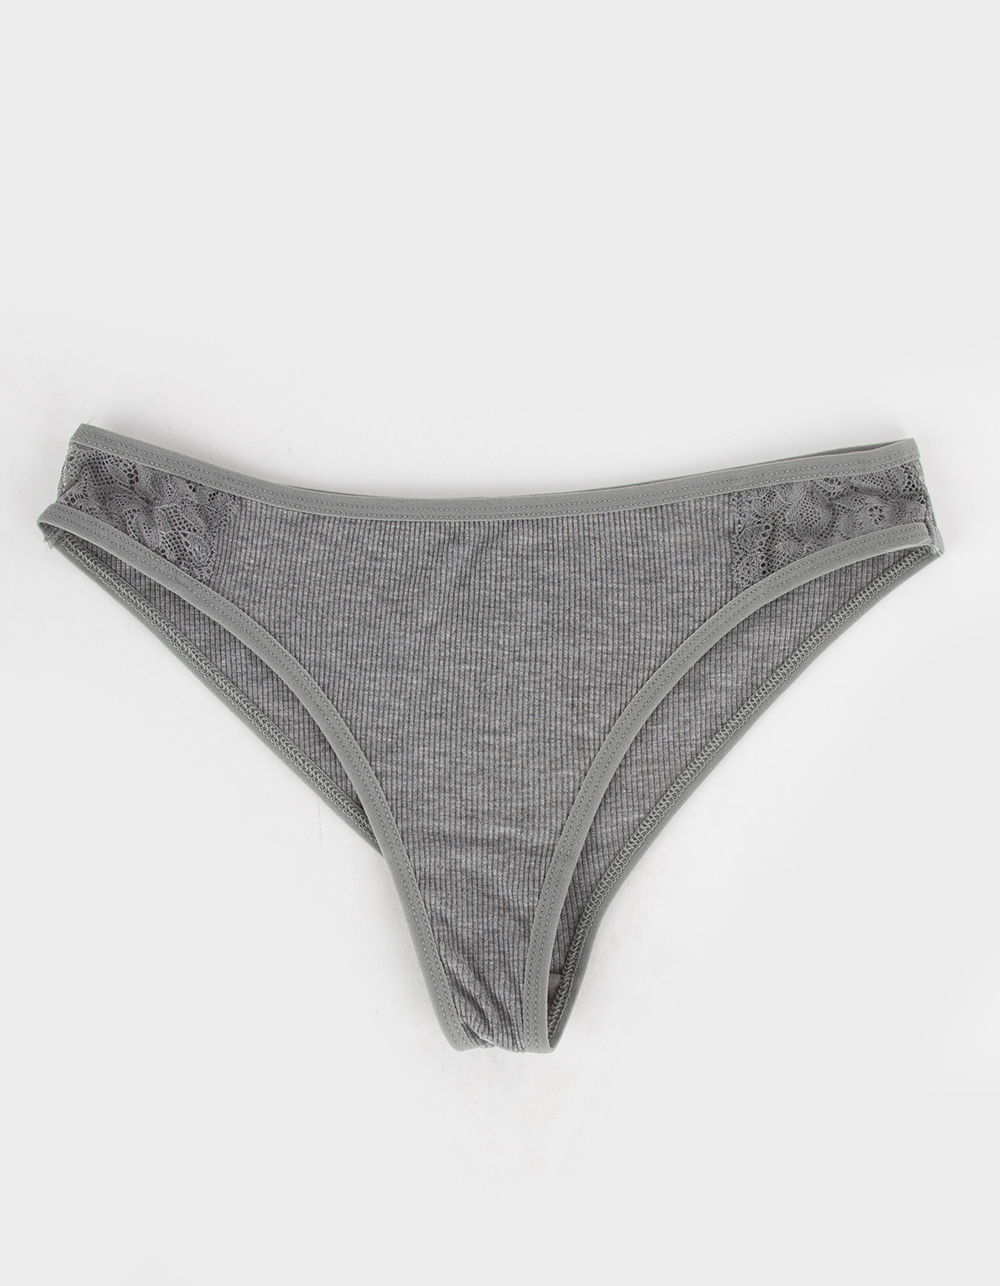 SKY & SPARROW Rib Laceside Bikini Panties - HEATHER GRAY | Tillys